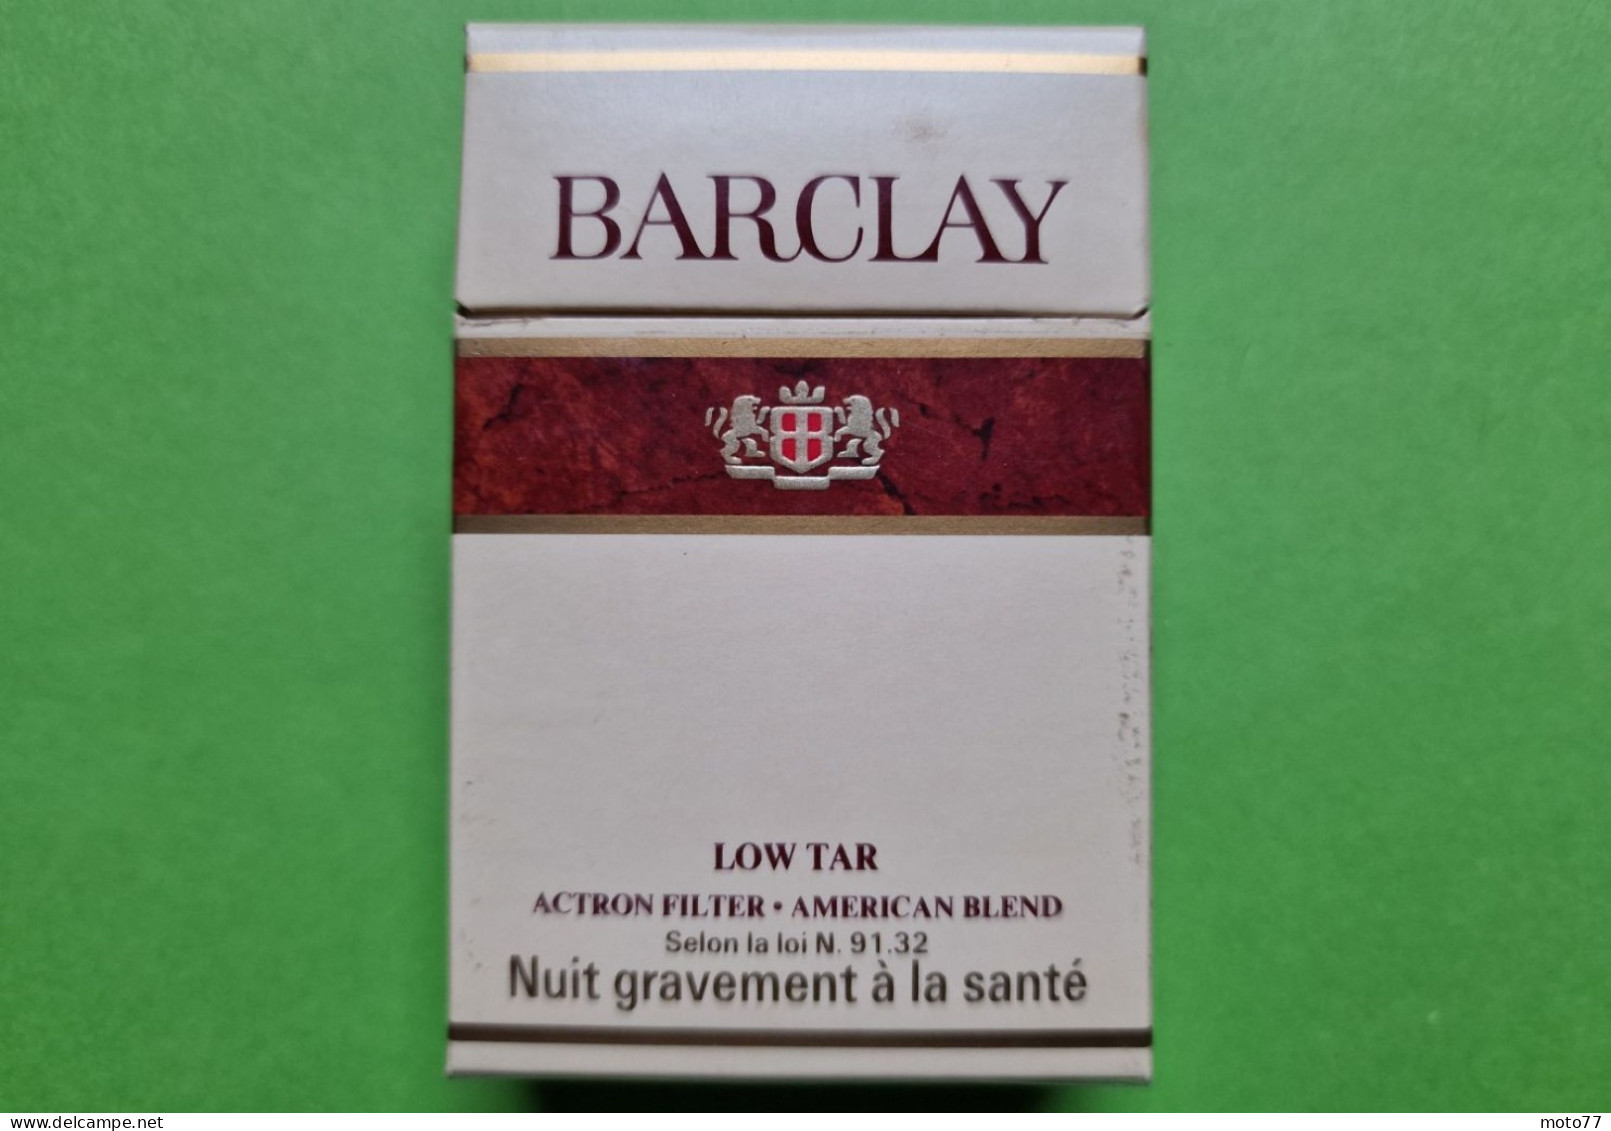 Ancien PAQUET De CIGARETTES Vide - BARCLAY - Vers 1980 - Etuis à Cigarettes Vides